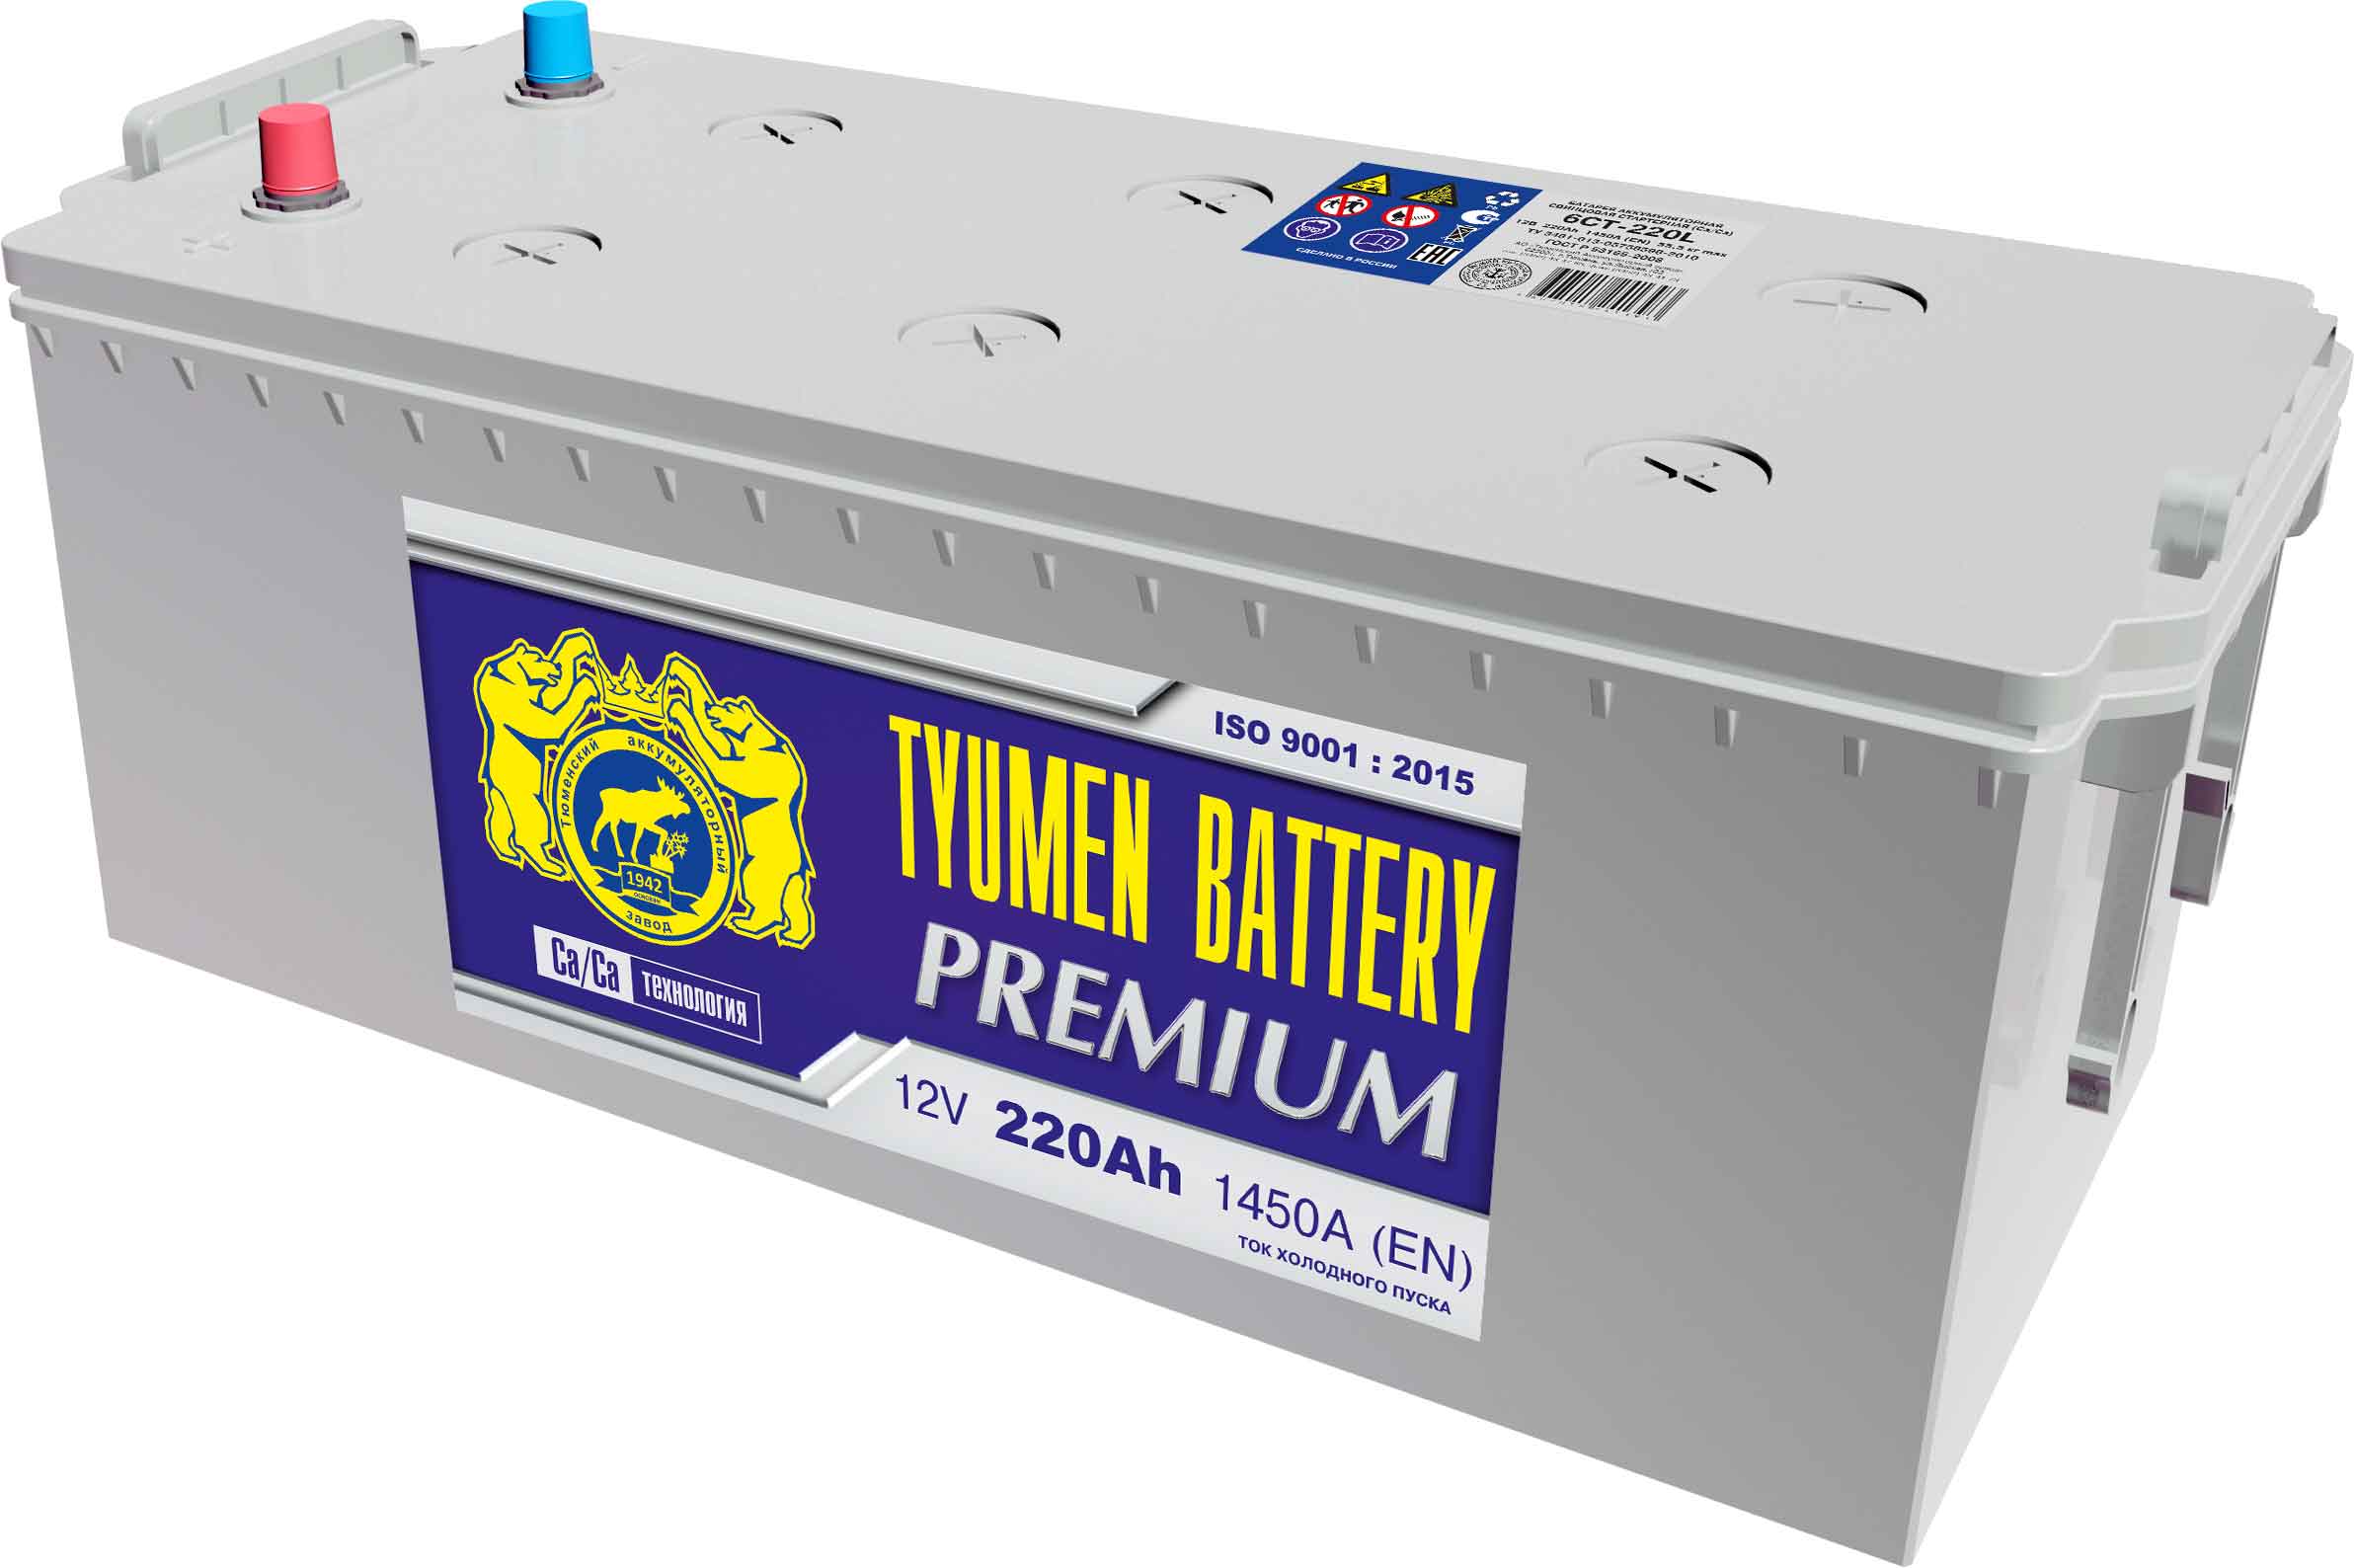 Автомобильный аккумулятор Tyumen Battery 6ст-220L Premium, 220Ач, 1450 EN, евро., прям.